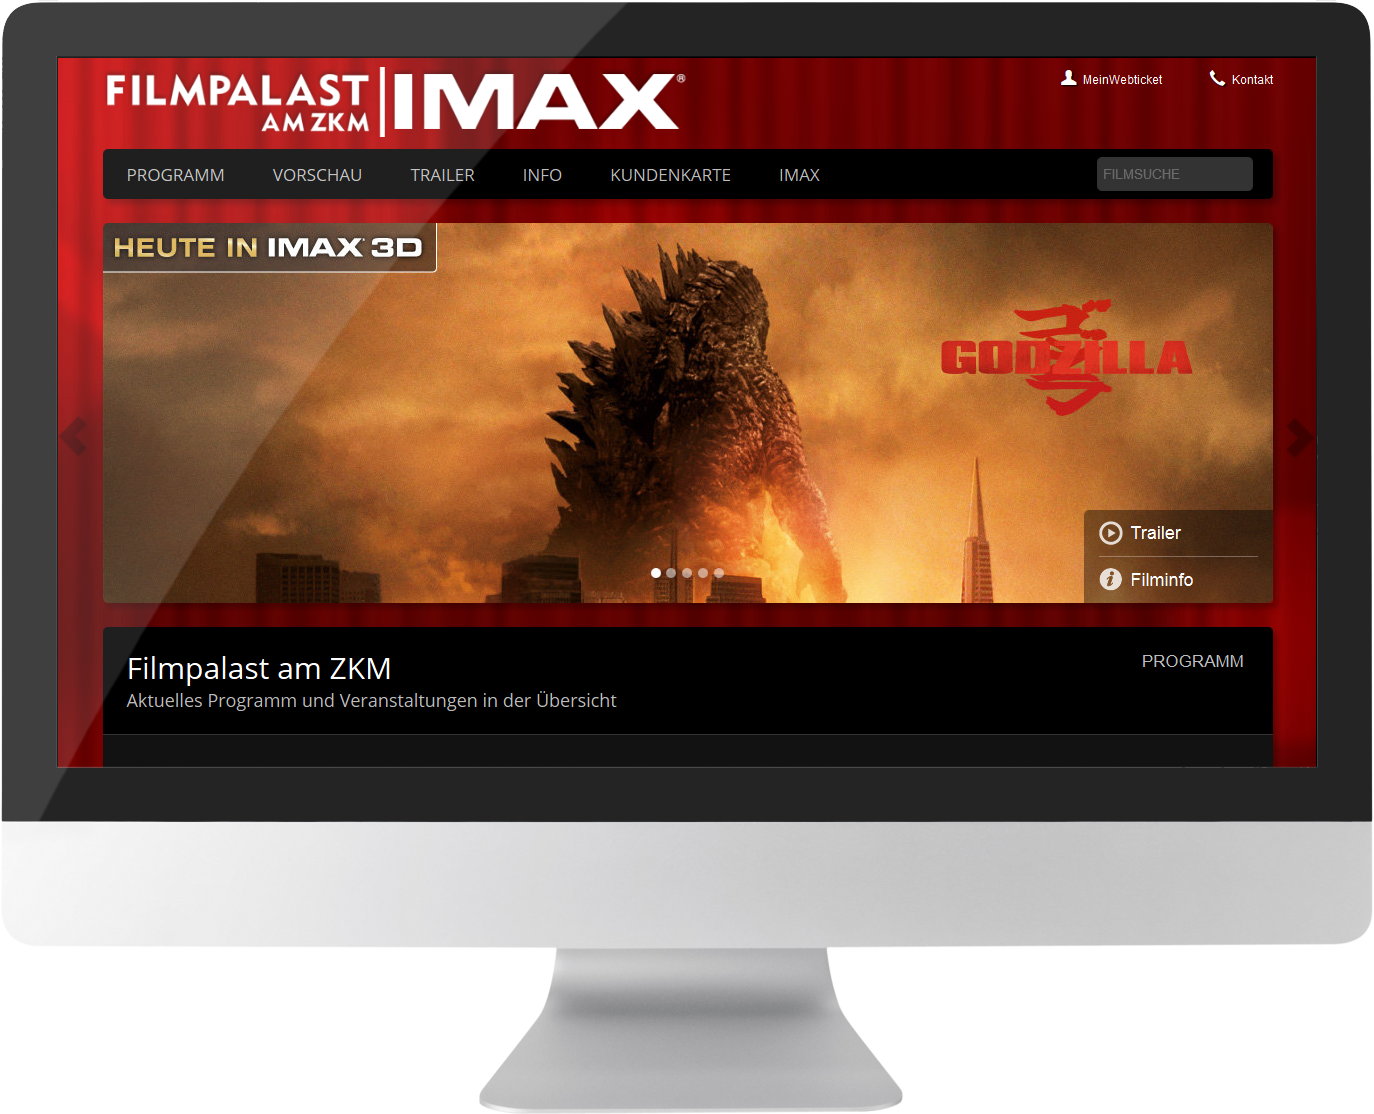 Bildmontage Filmpalast am ZKM GmbH & Co. KG Desktop Startseite